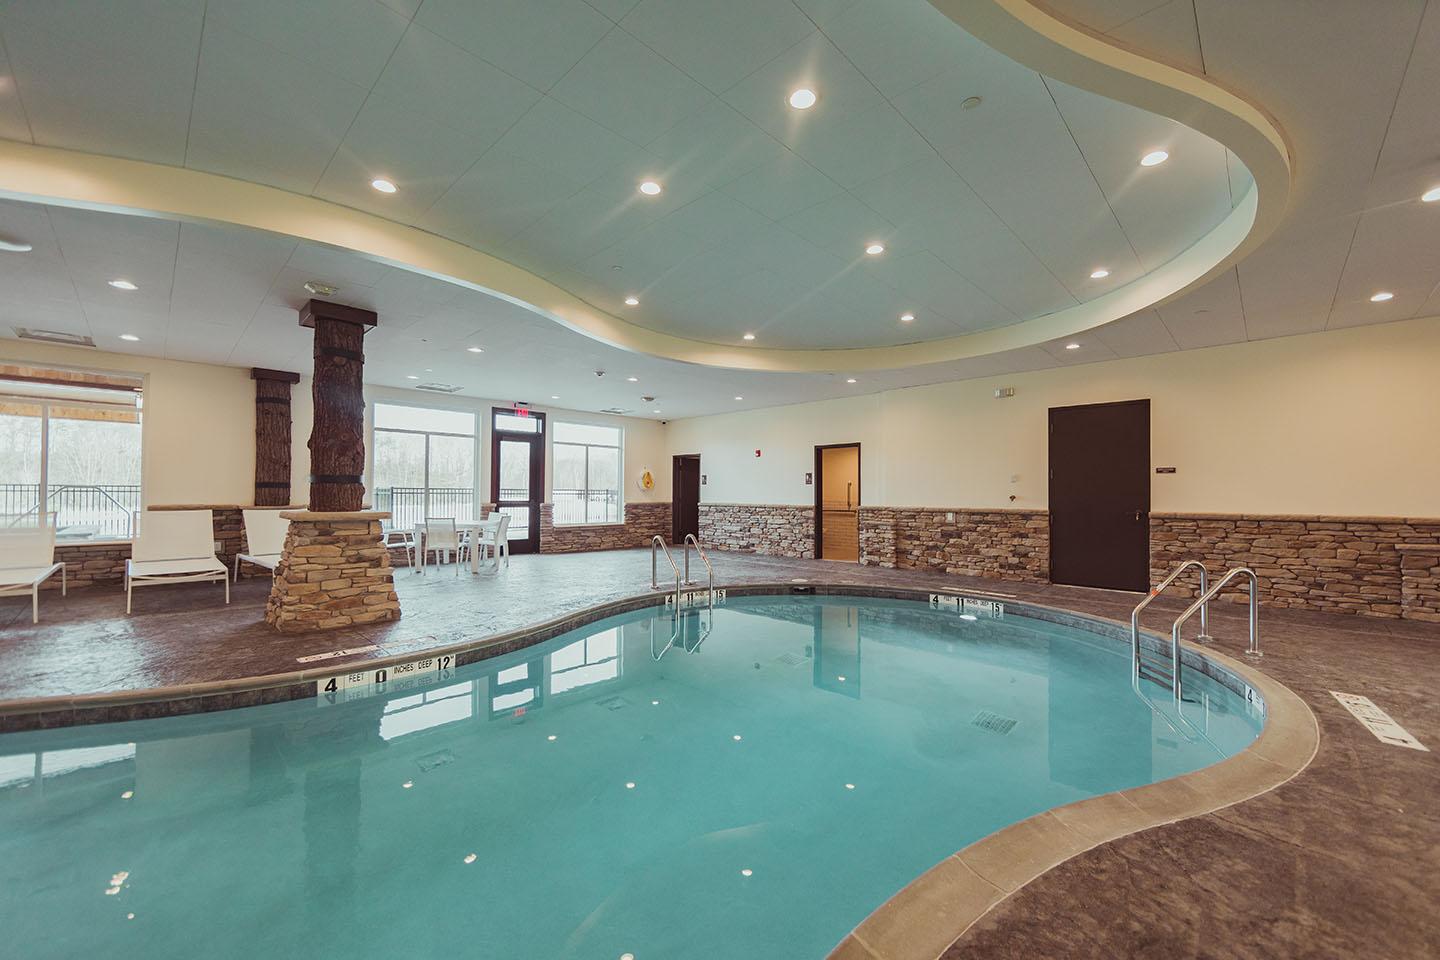 Pool area interior pool